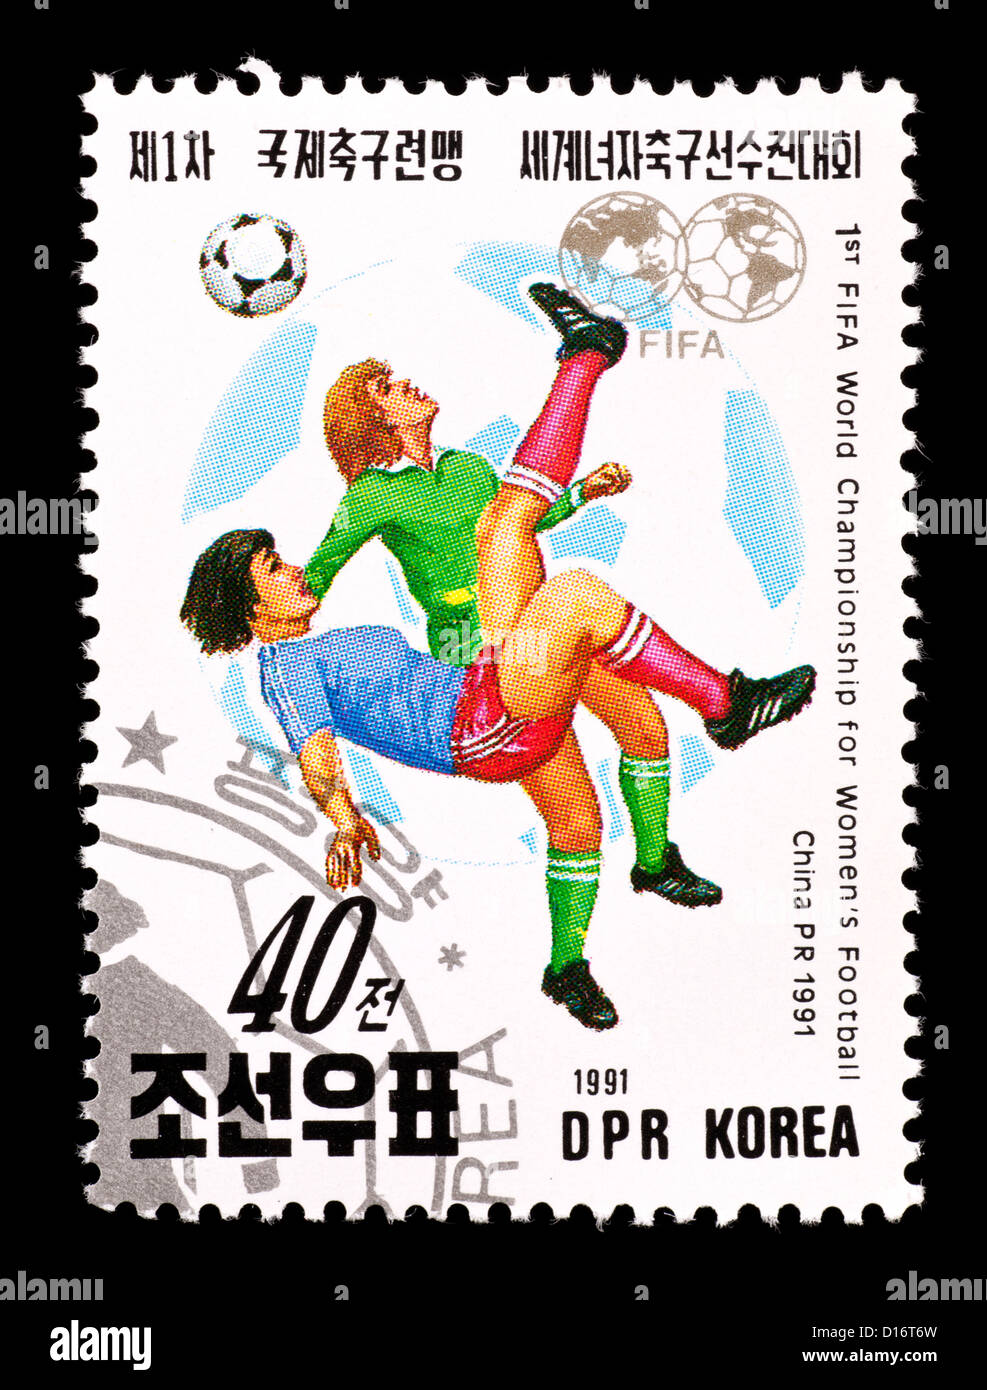 Timbre-poste de la Corée du Nord, les femmes représentant des joueurs de football, publié pour la première Coupe du Monde féminine de soccer. Banque D'Images